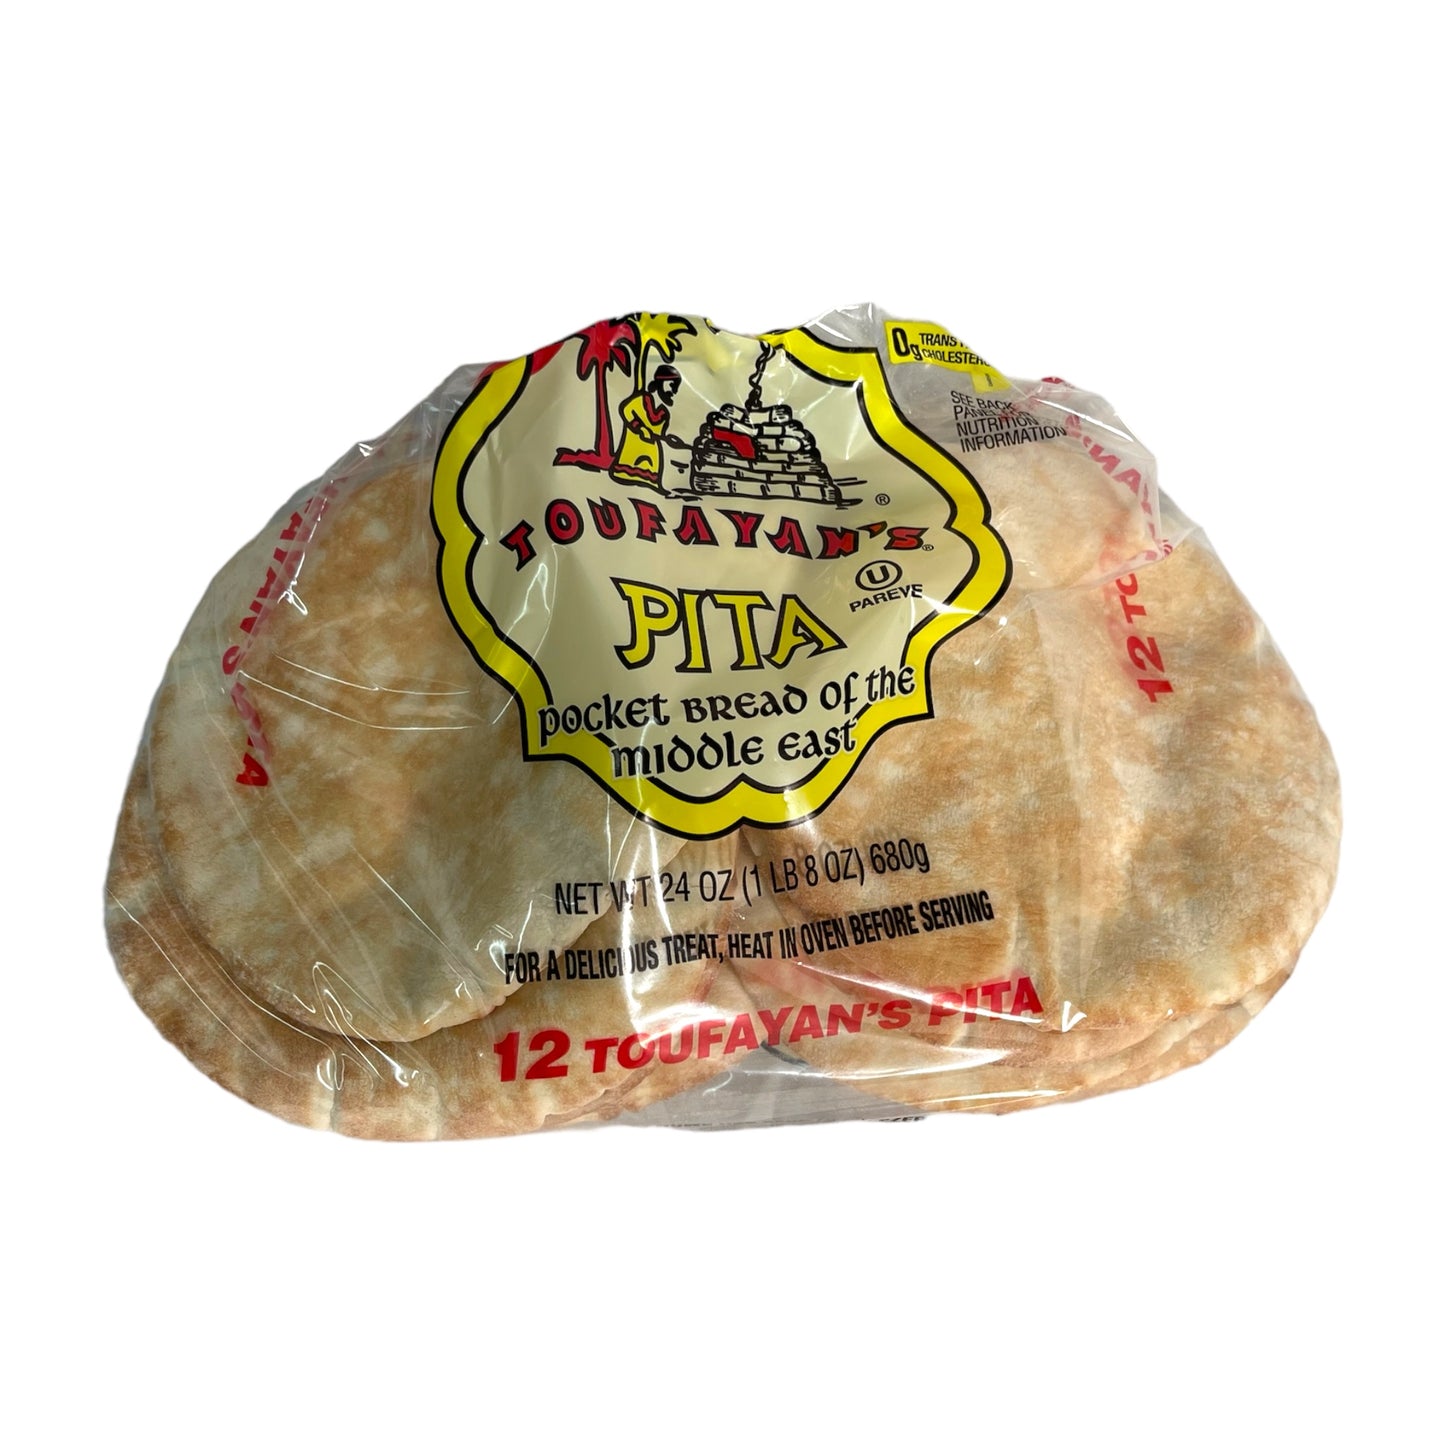 Taufayan White Pita Bread توفيان خبز ابيض